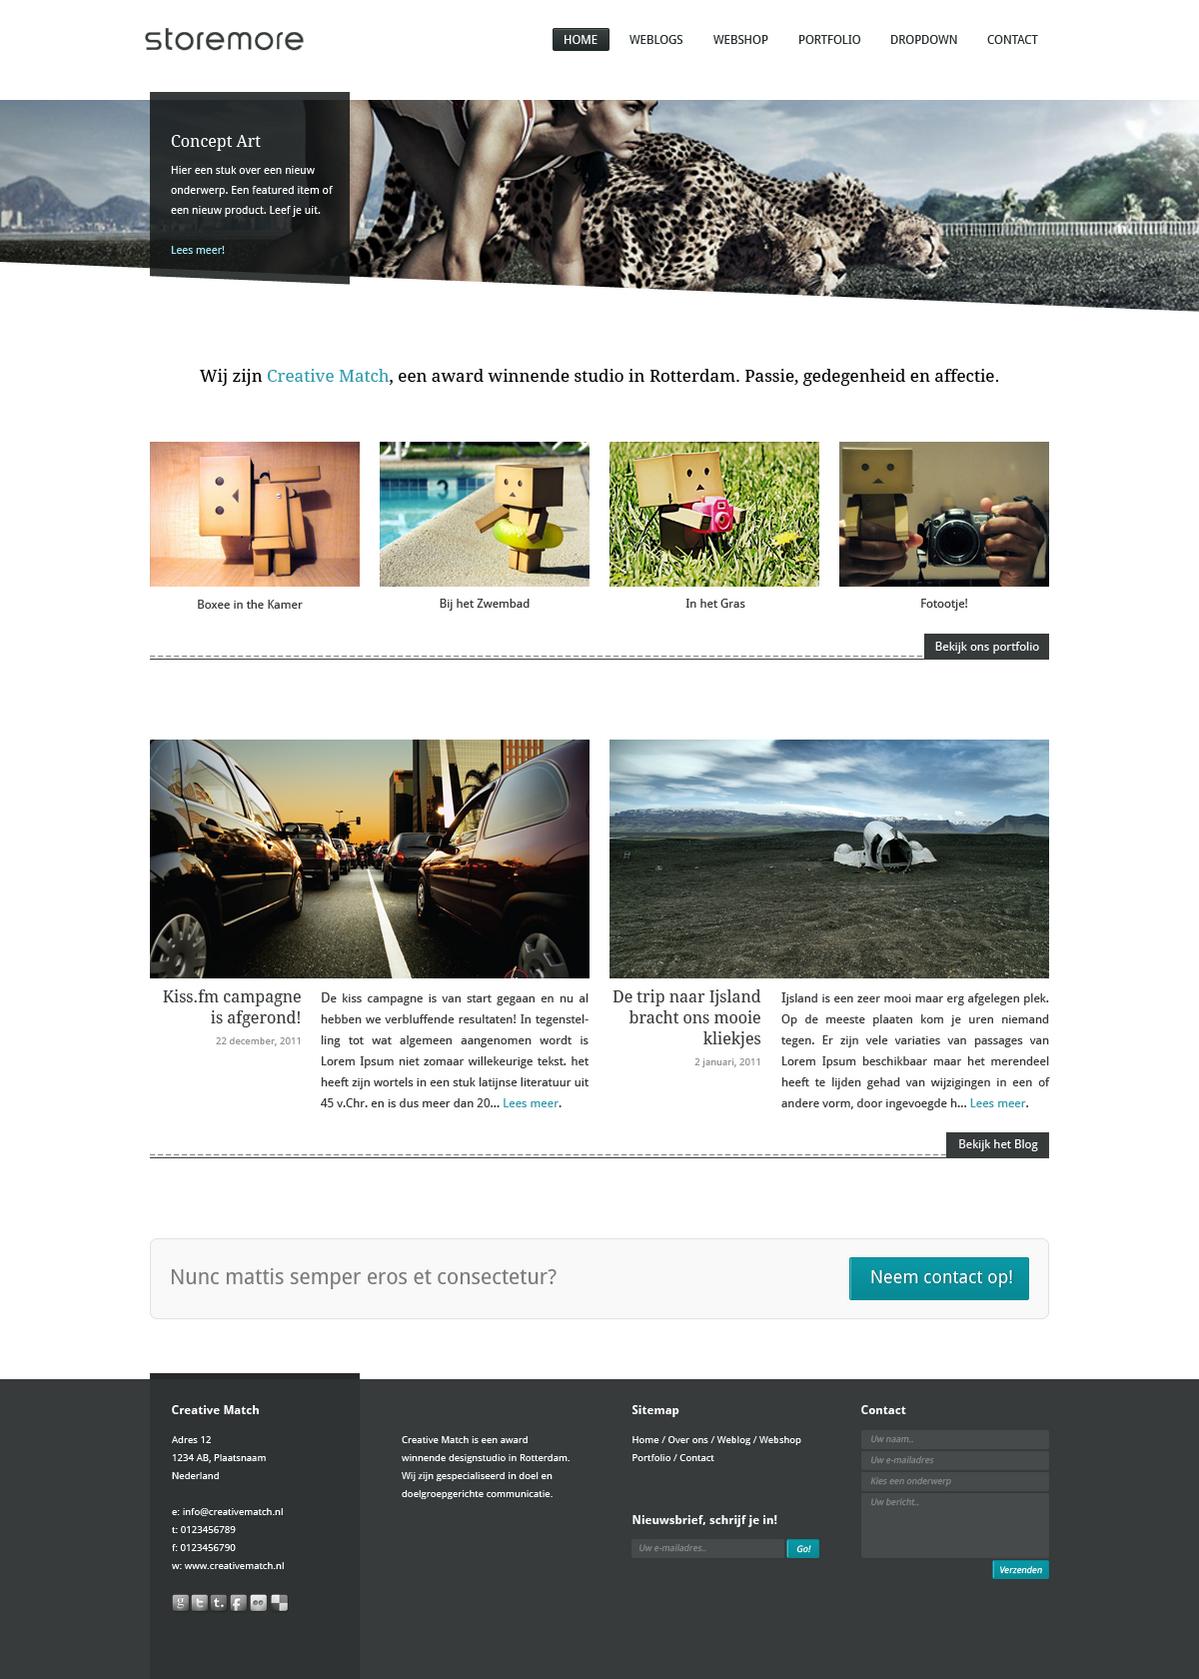 Blog, webshop, portfolio-storemore_home-jpg